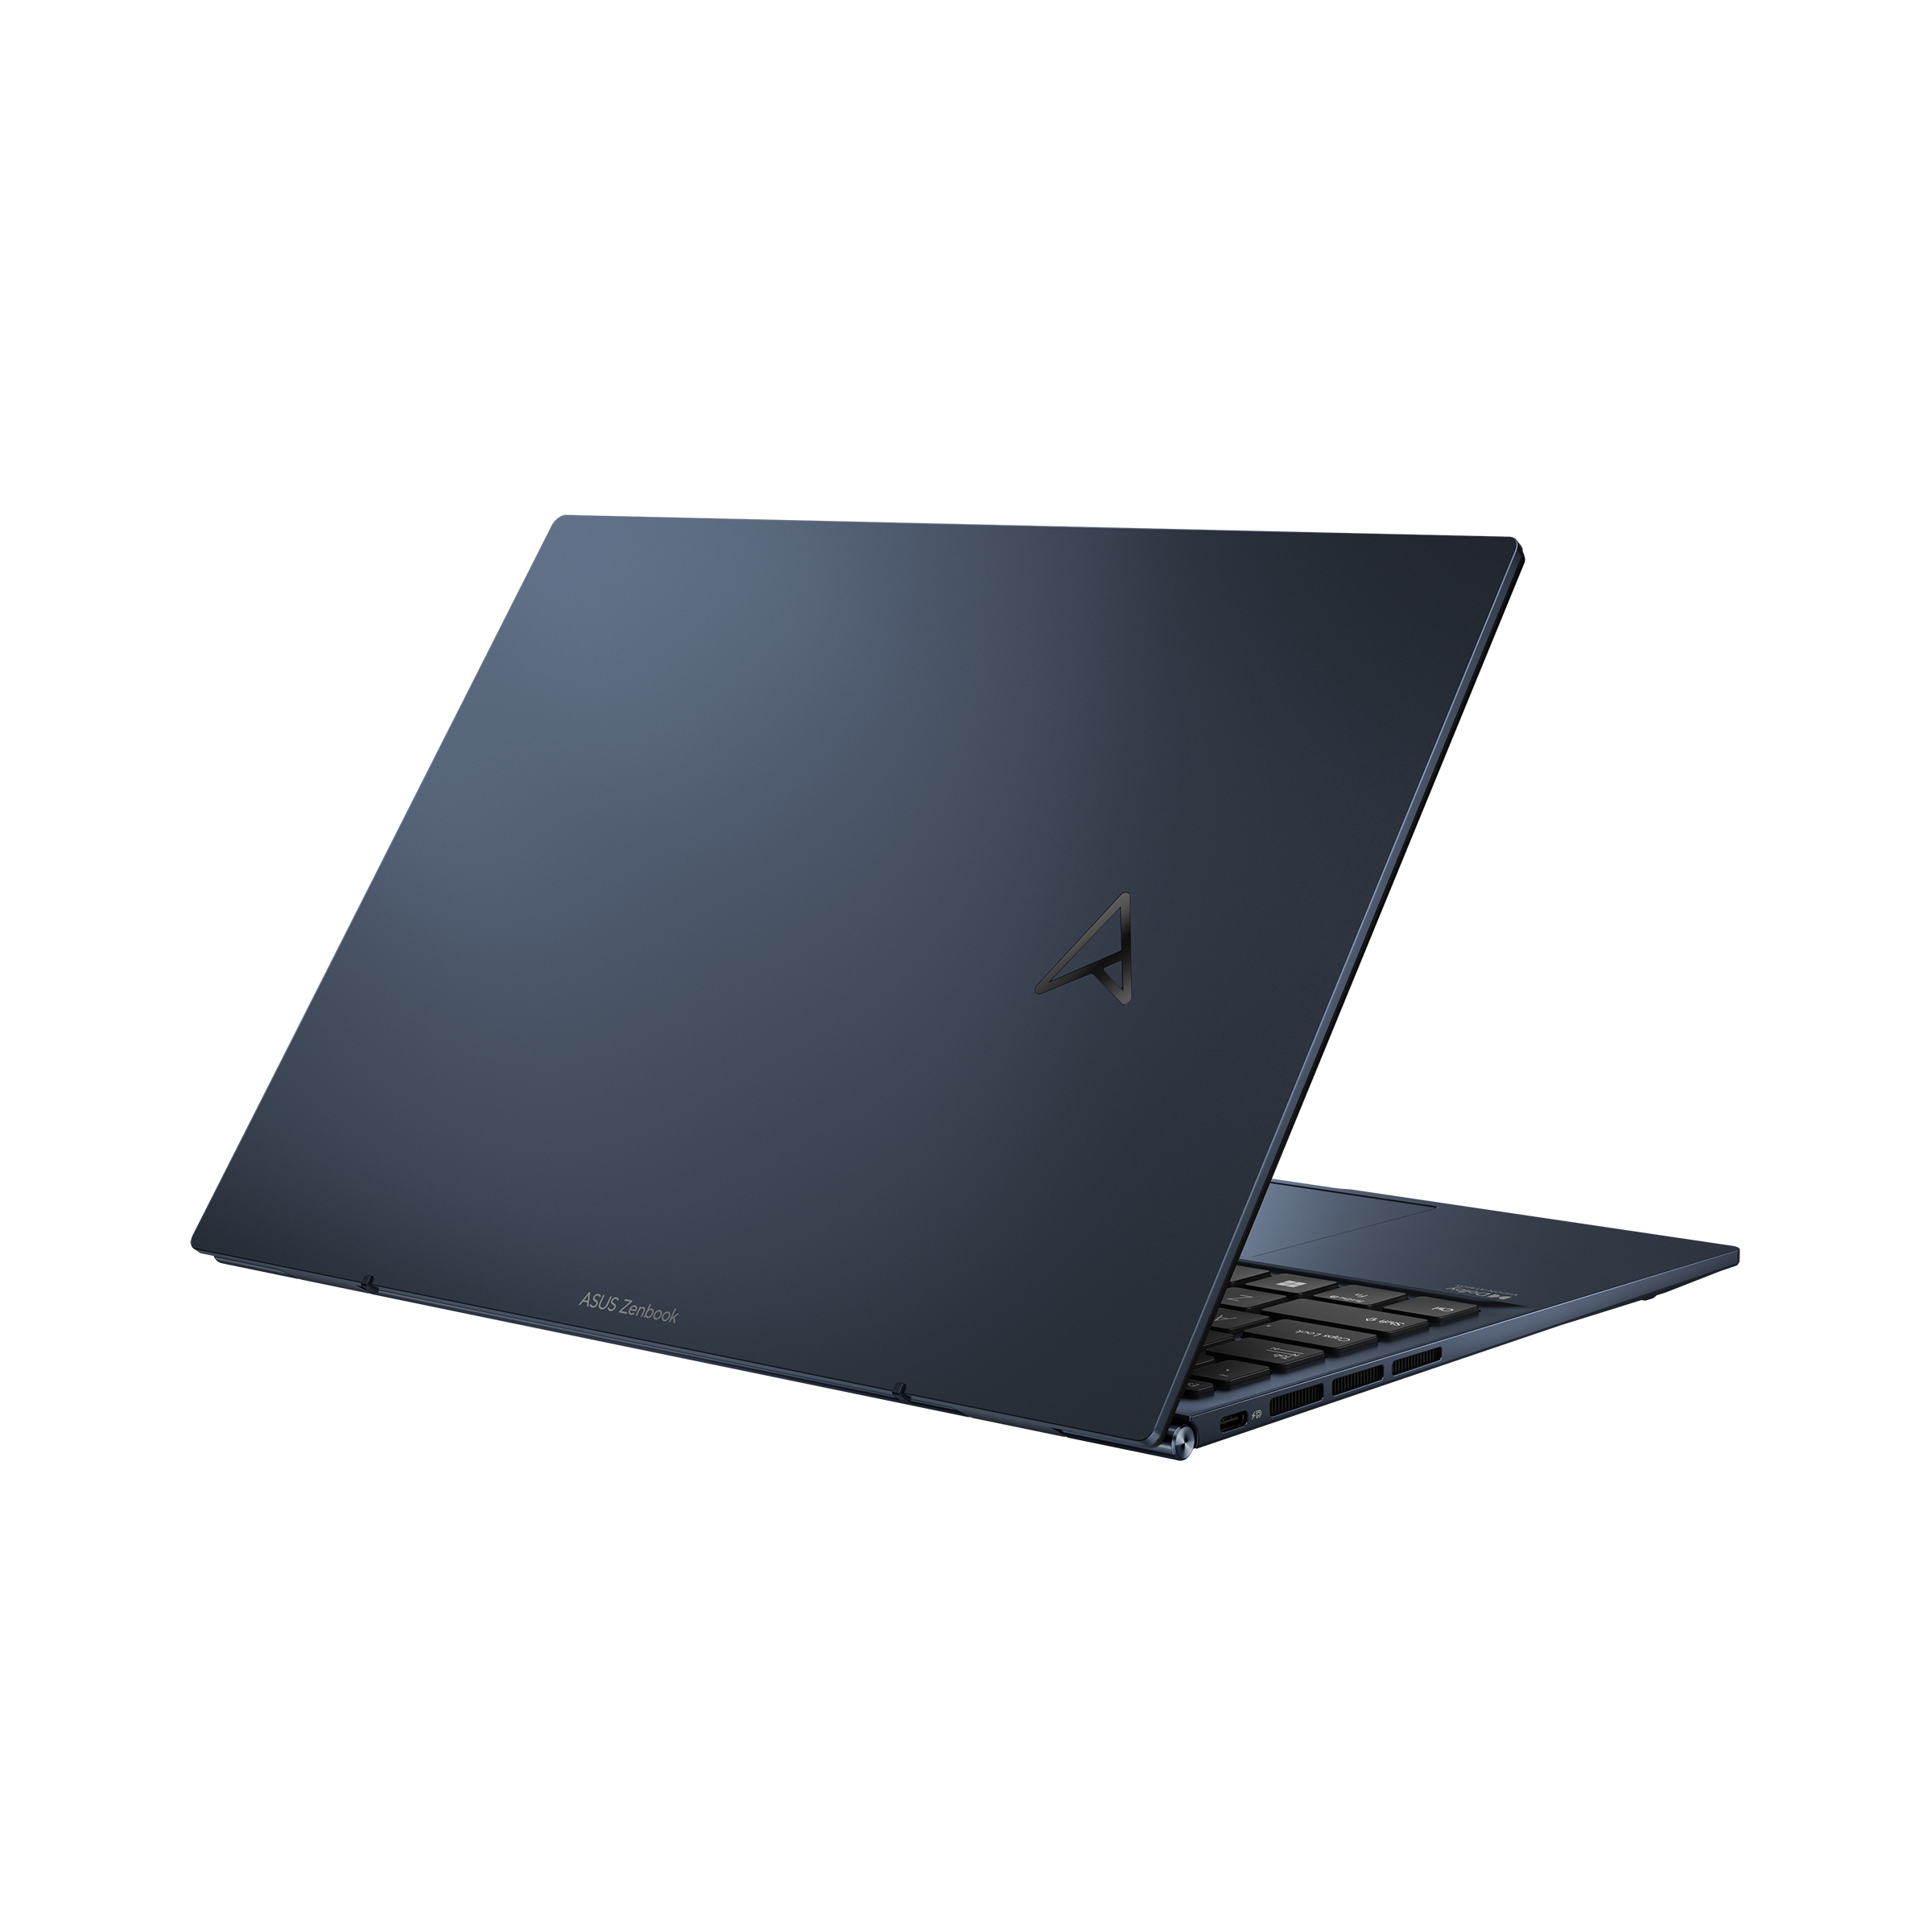 Zenbook S 13 OLED (UM5302, AMD Ryzen 6000 series)